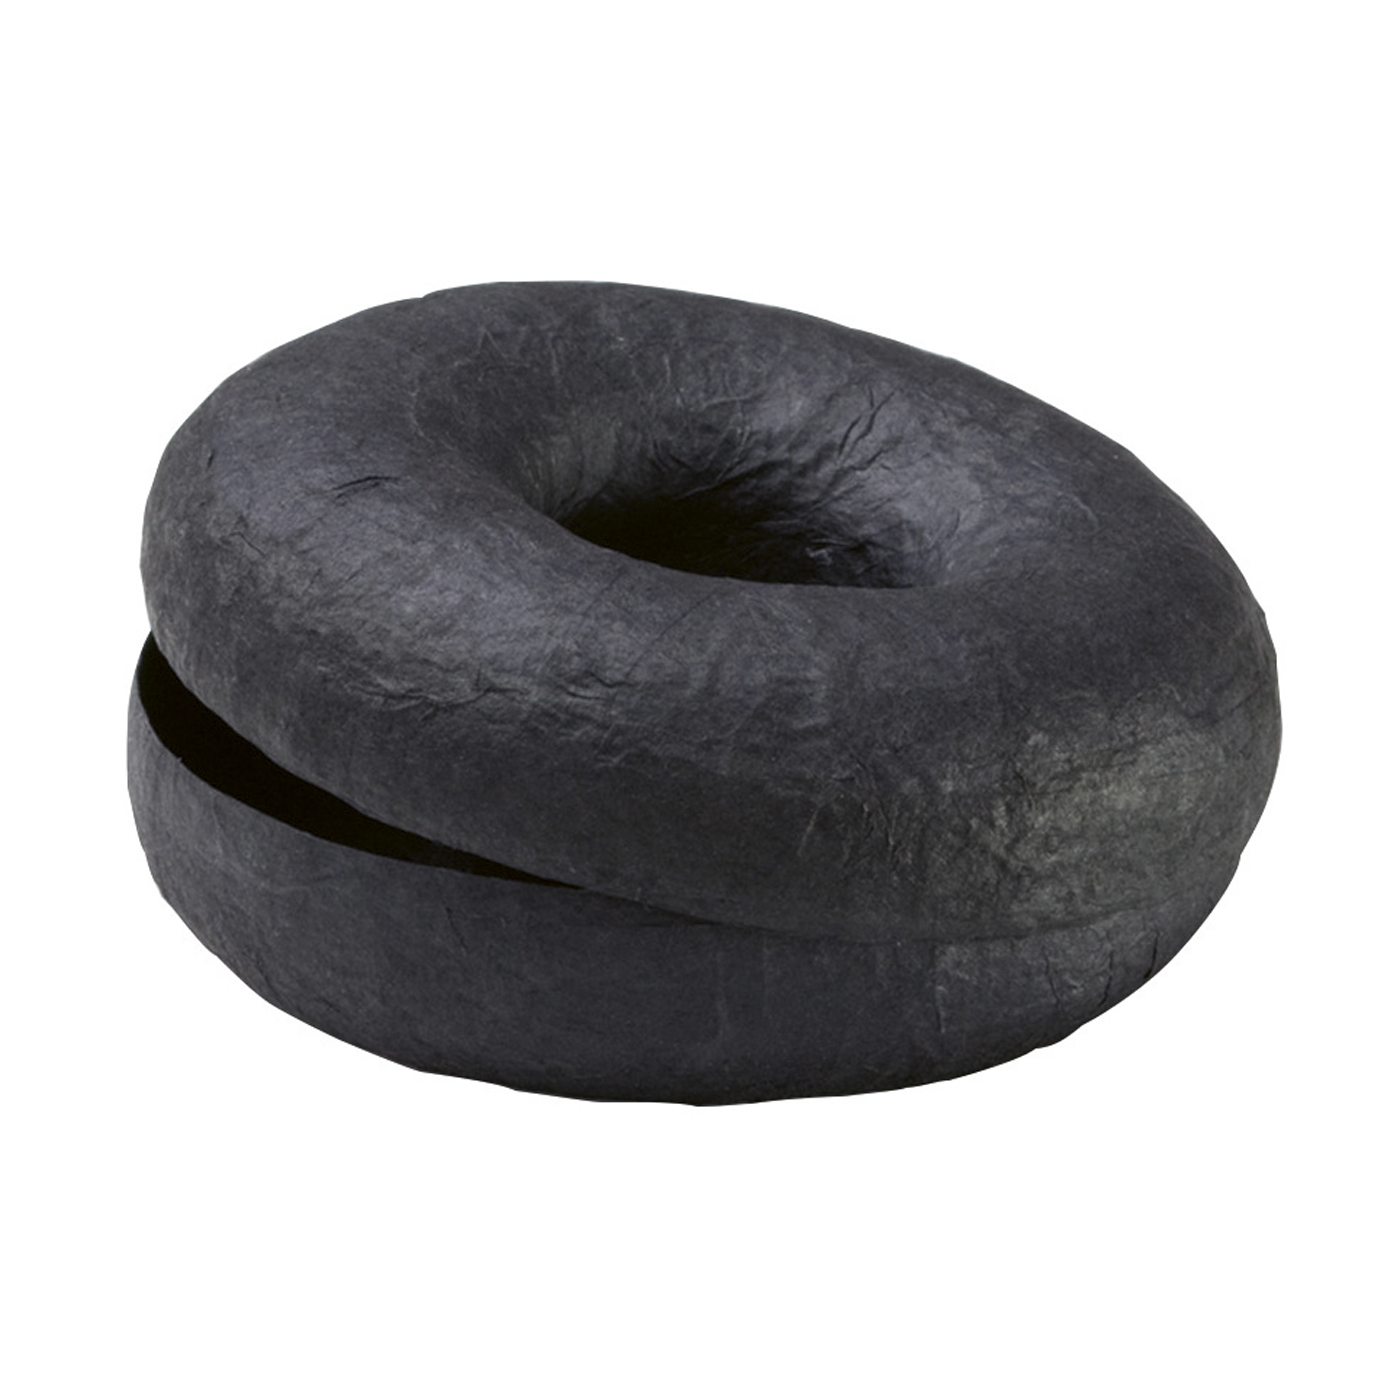 PICA-Design Schmucketui "Donut", schwarz, ø 100 mm - 1 Stück